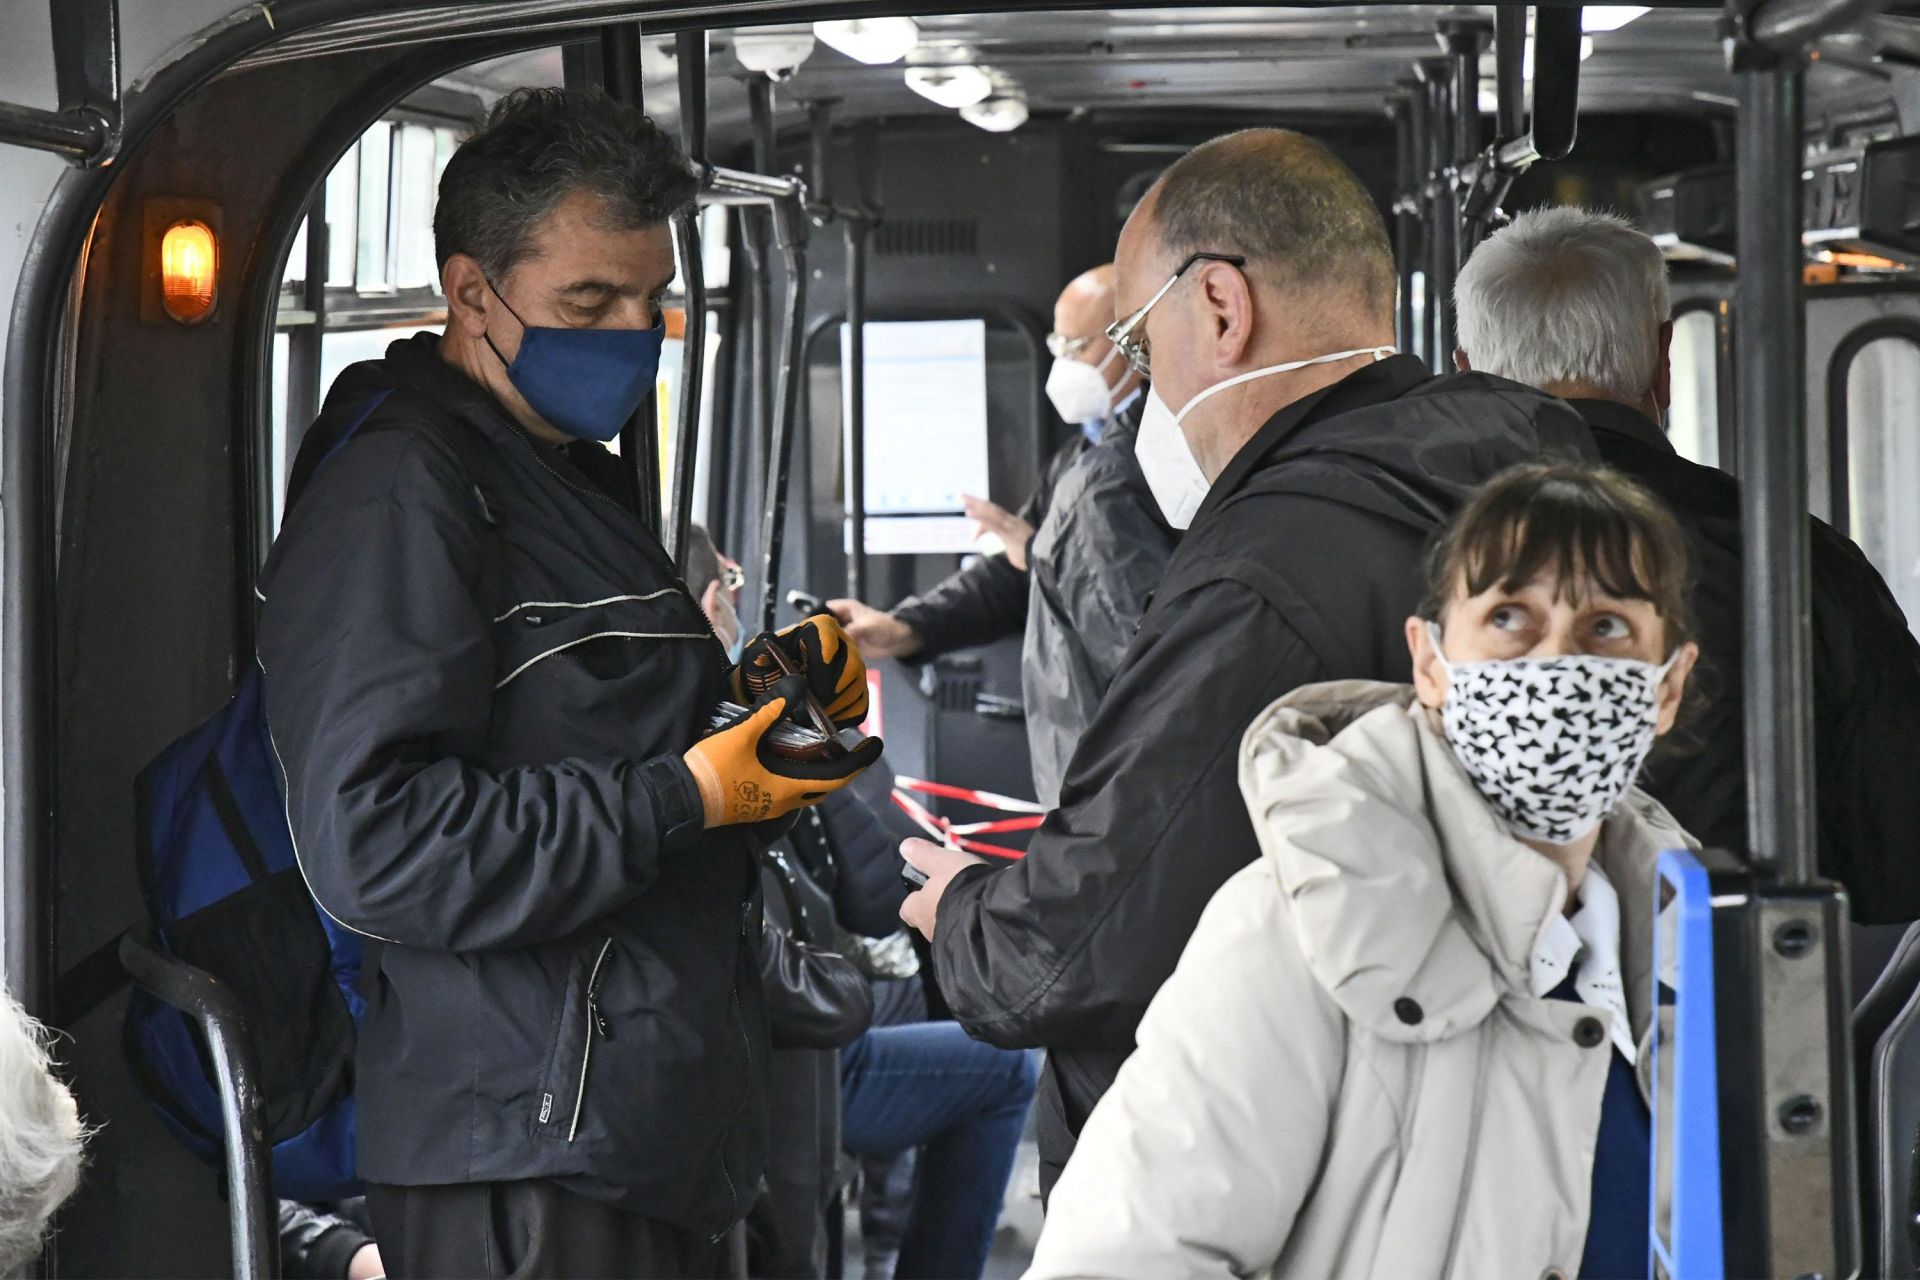  Започнаха масови проверки за маски в градския транспорт